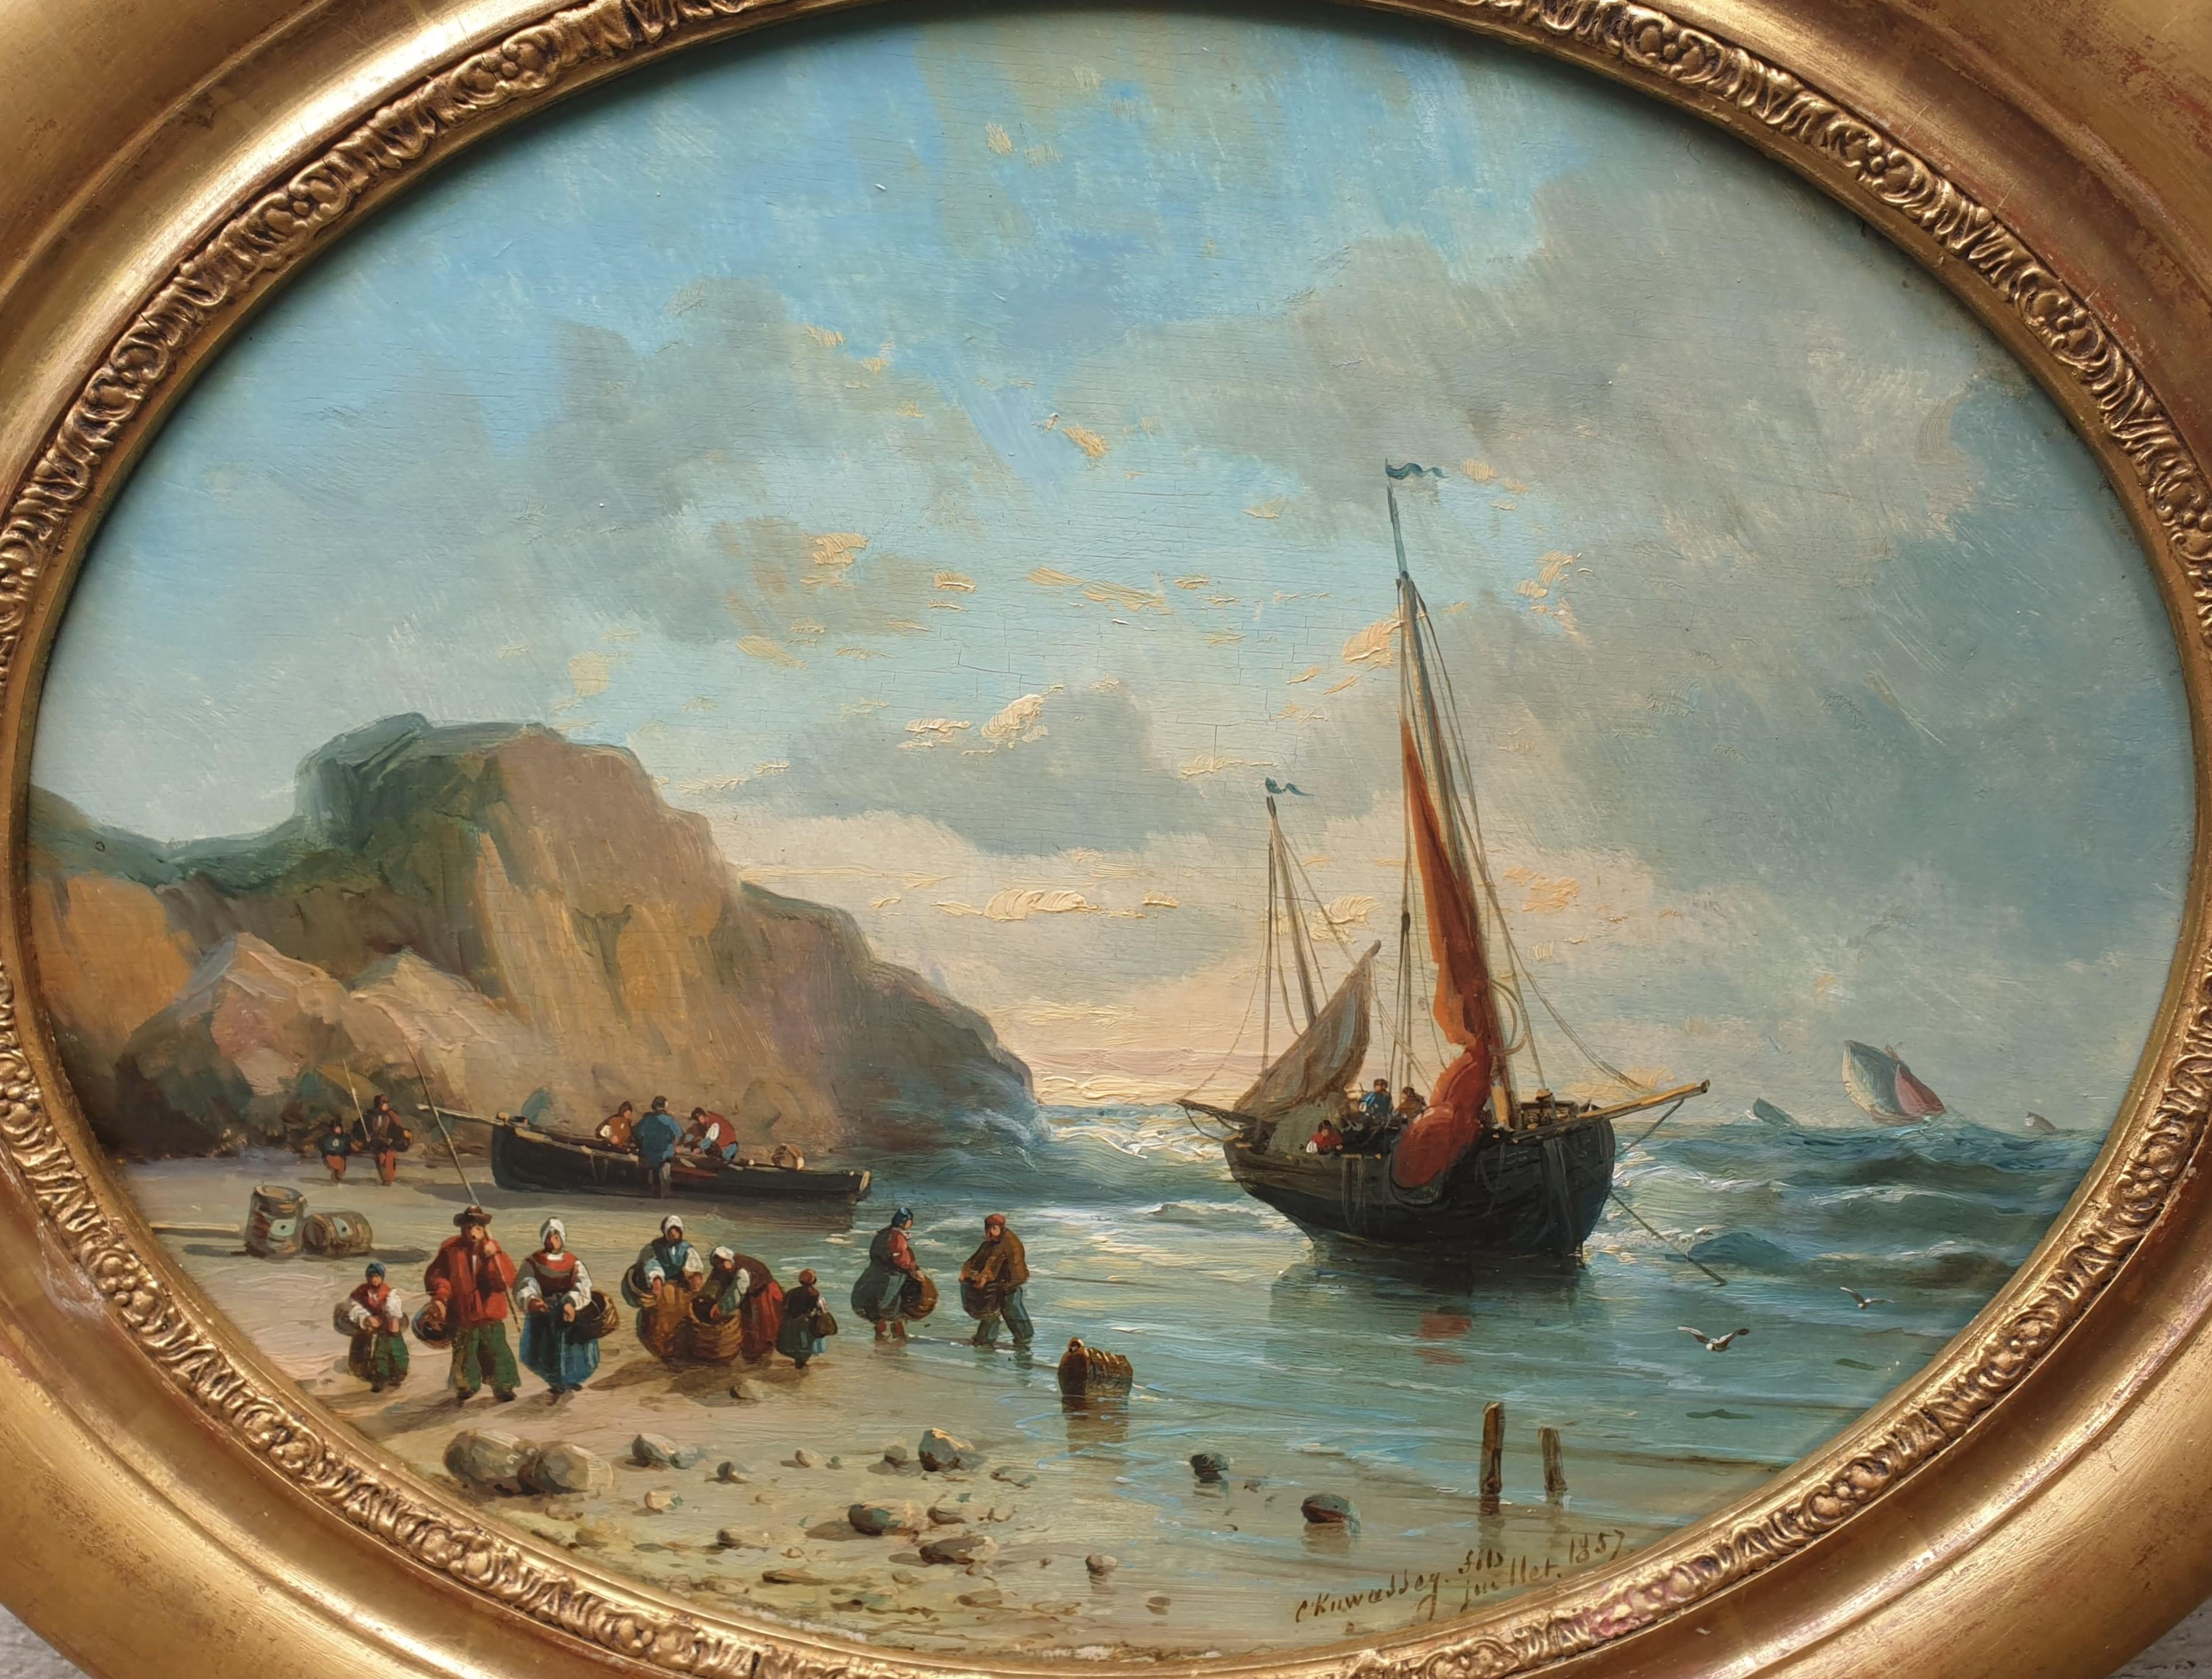 Peinture de KUWASSEG ovale bateaux de plage français romantiques Normandie 19e  - Painting de Charles Euphrasie Kuwasseg